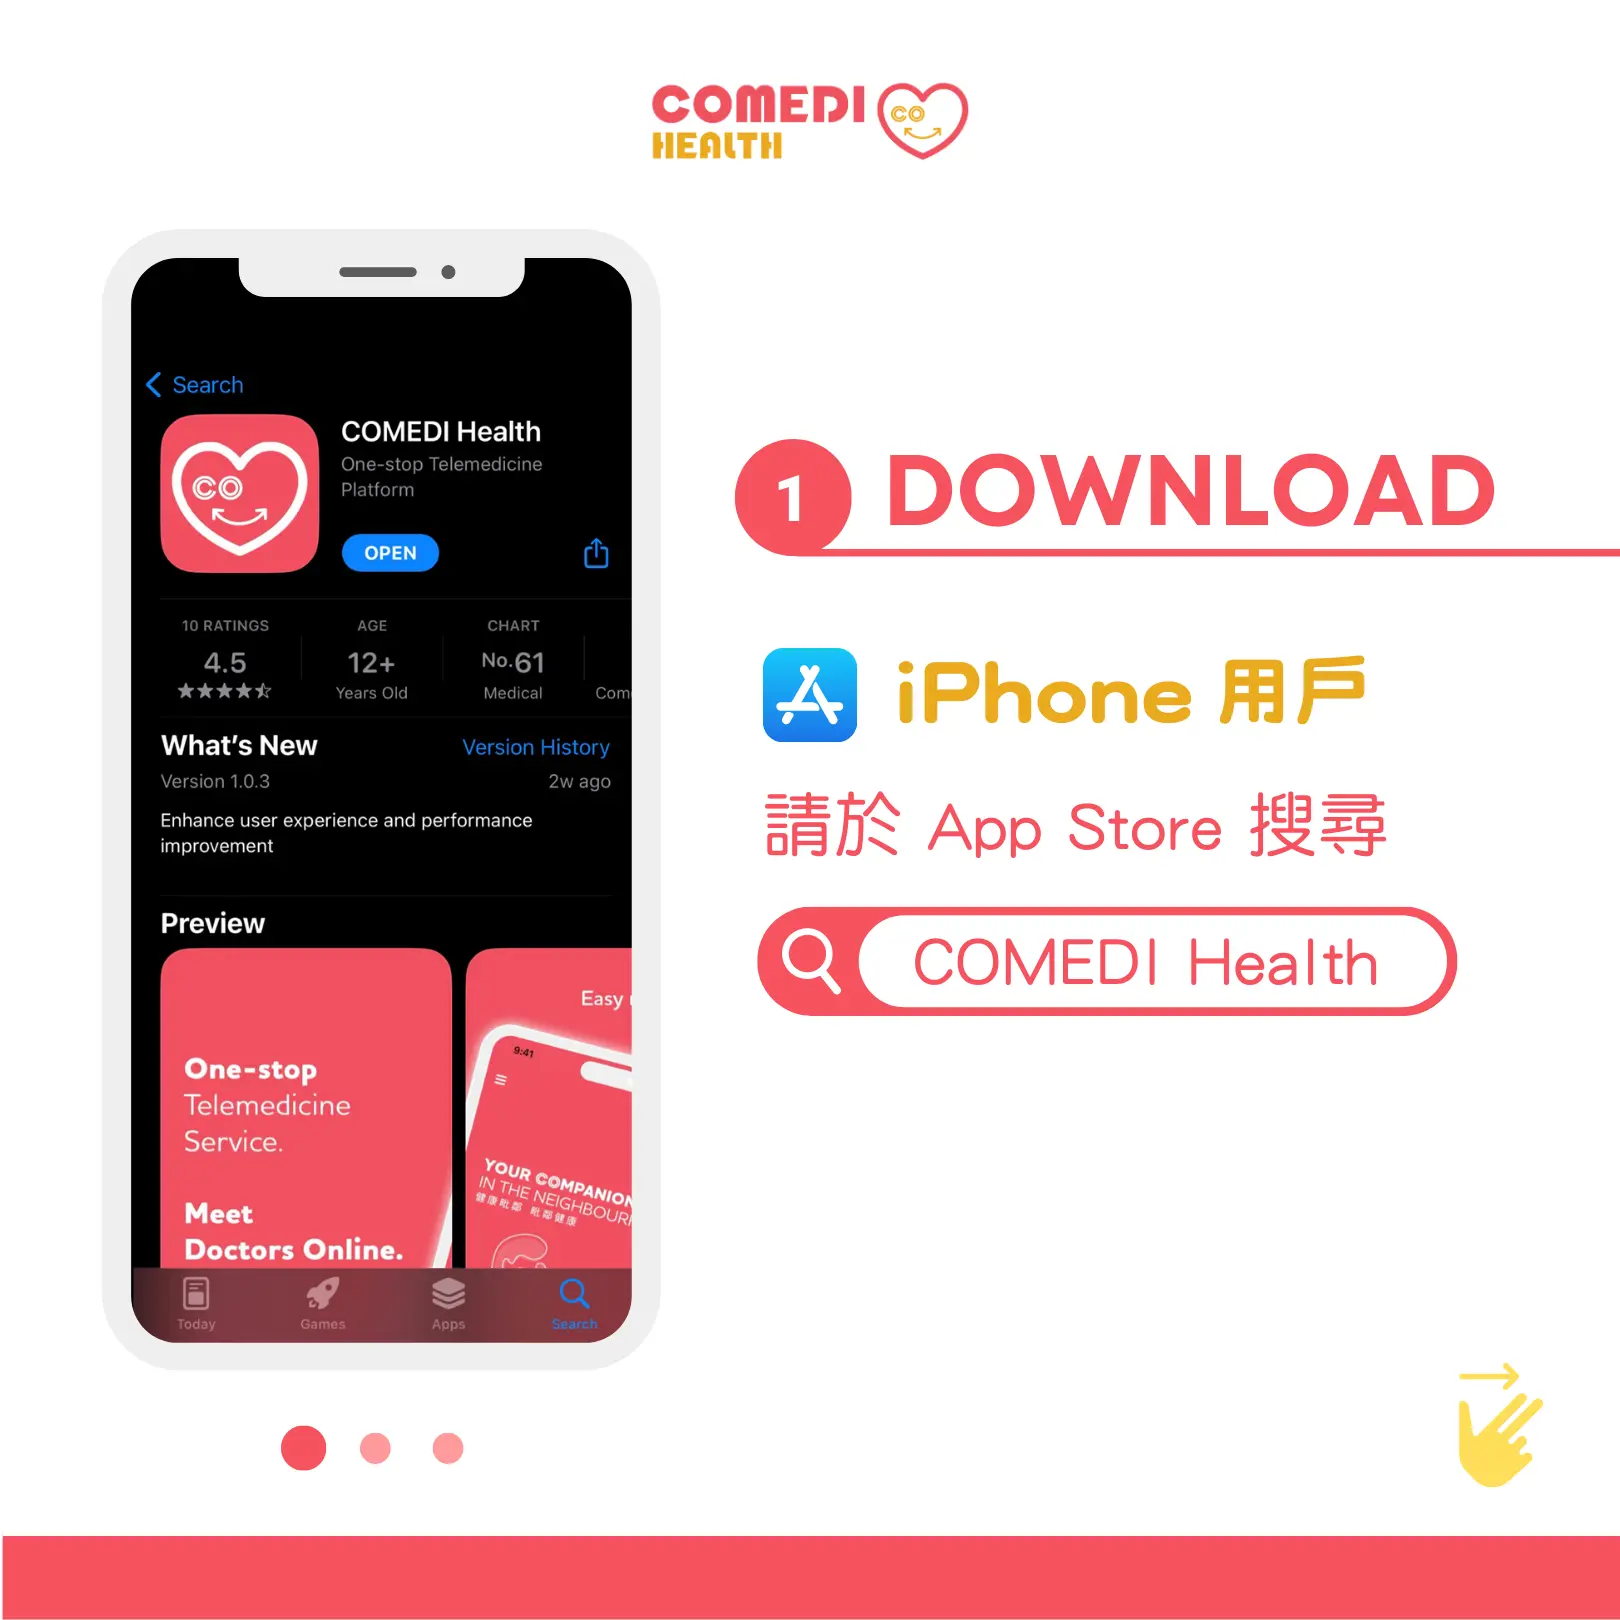 iPhone 用戶可於 App Store 搜尋 「COMEDI Health」並下載應用程式。